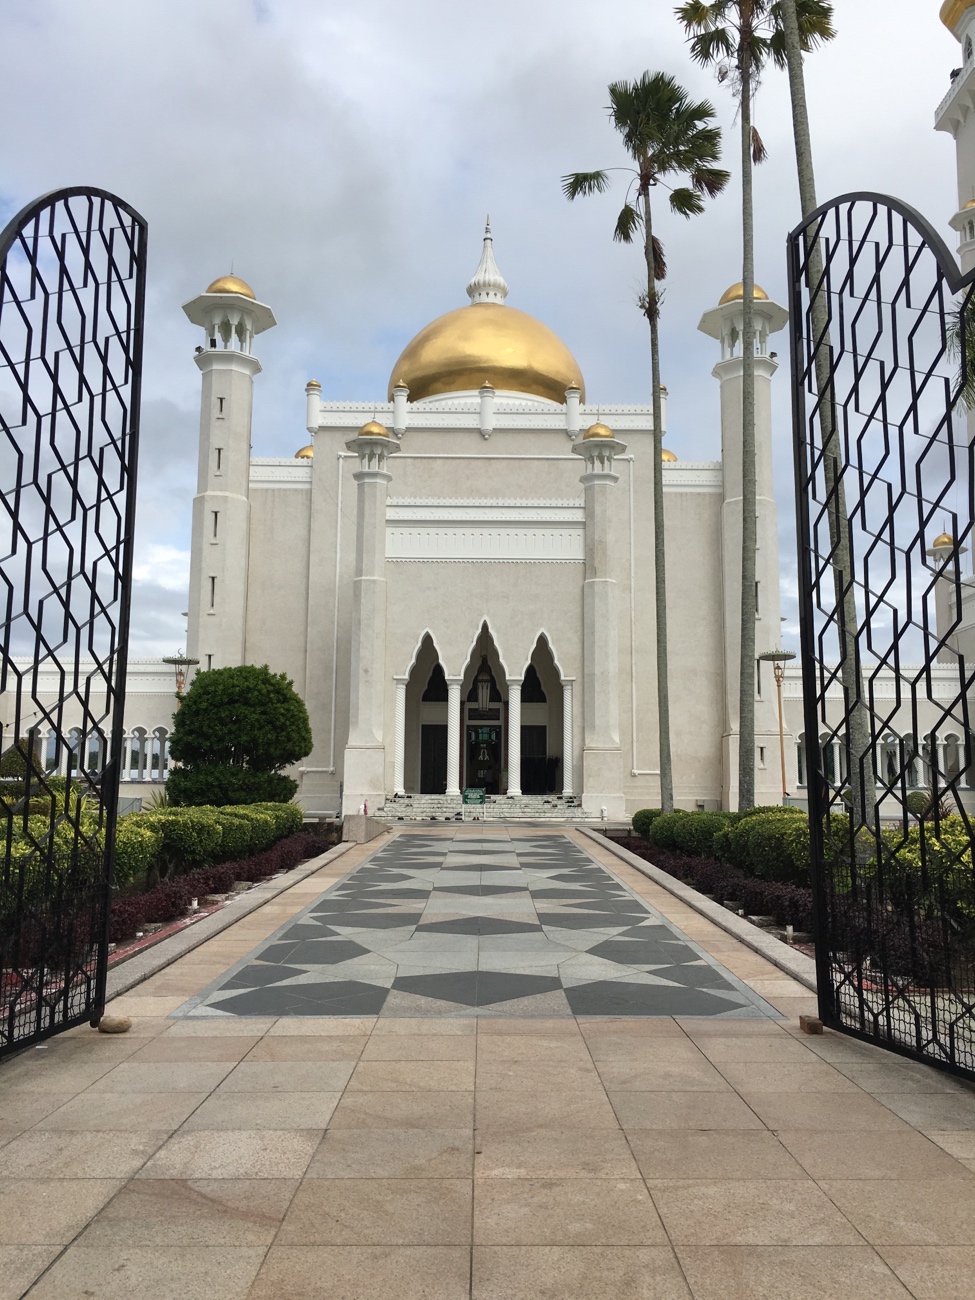 ชวนเที่ยว Brunei ^^ ประเทศเล็กๆ ที่อบอุ่นด้วยมิตรภาพ - Pantip